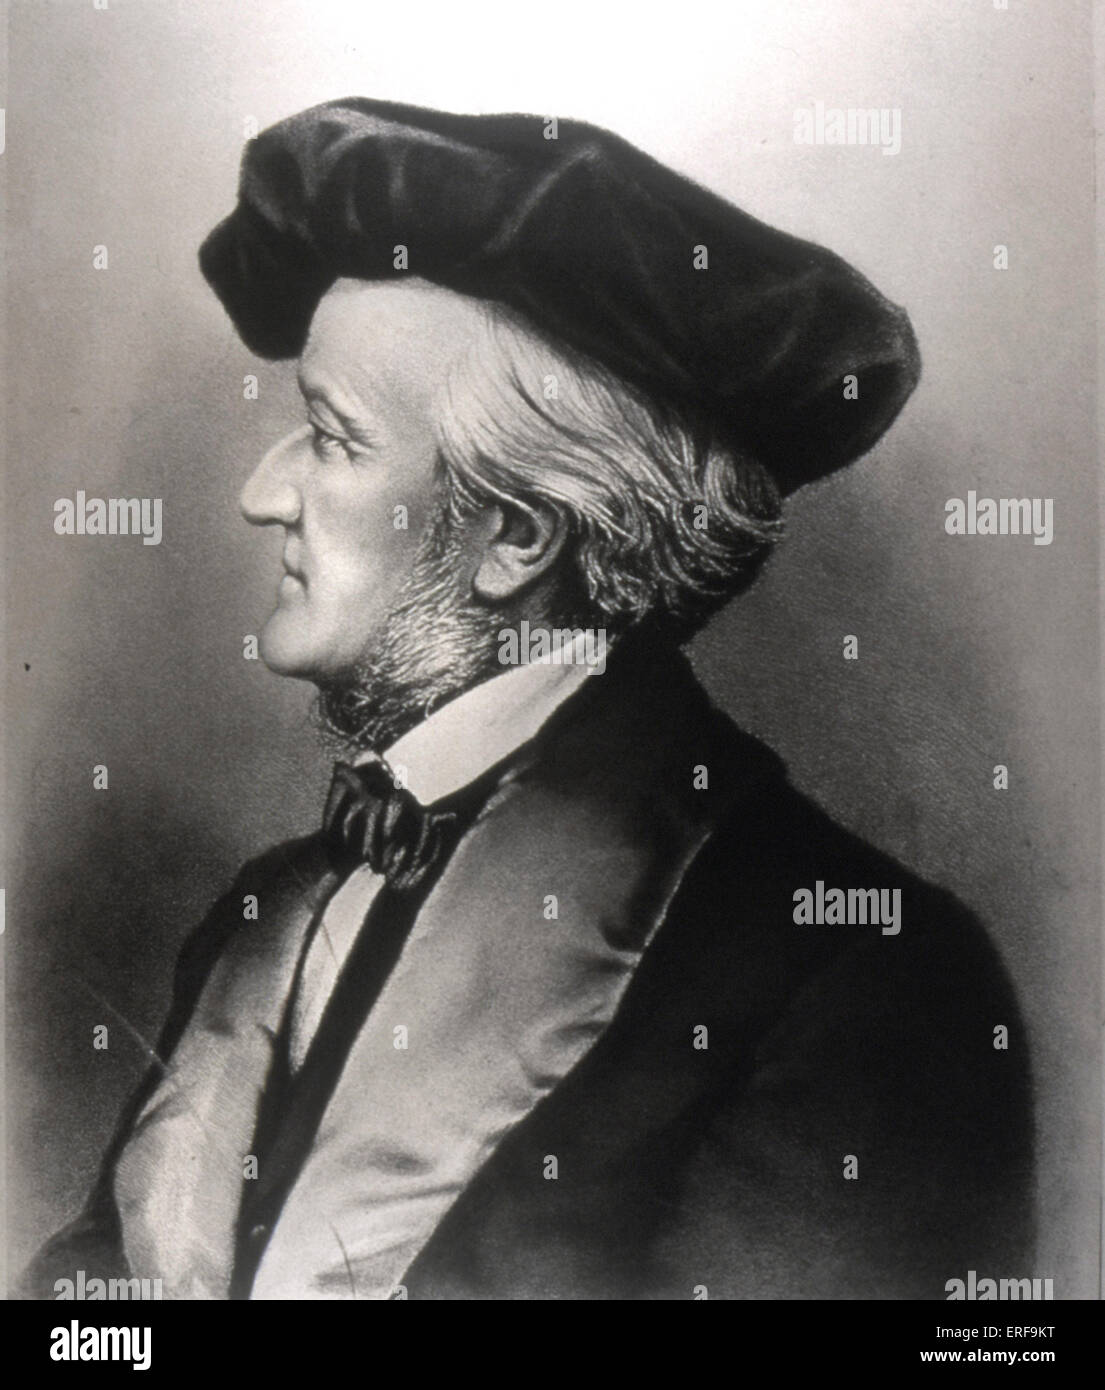 WAGNER, Richard - profilo a cappello. Compositore tedesco & autore, 22 maggio 1813 - 13 febbraio 1883. Foto Stock